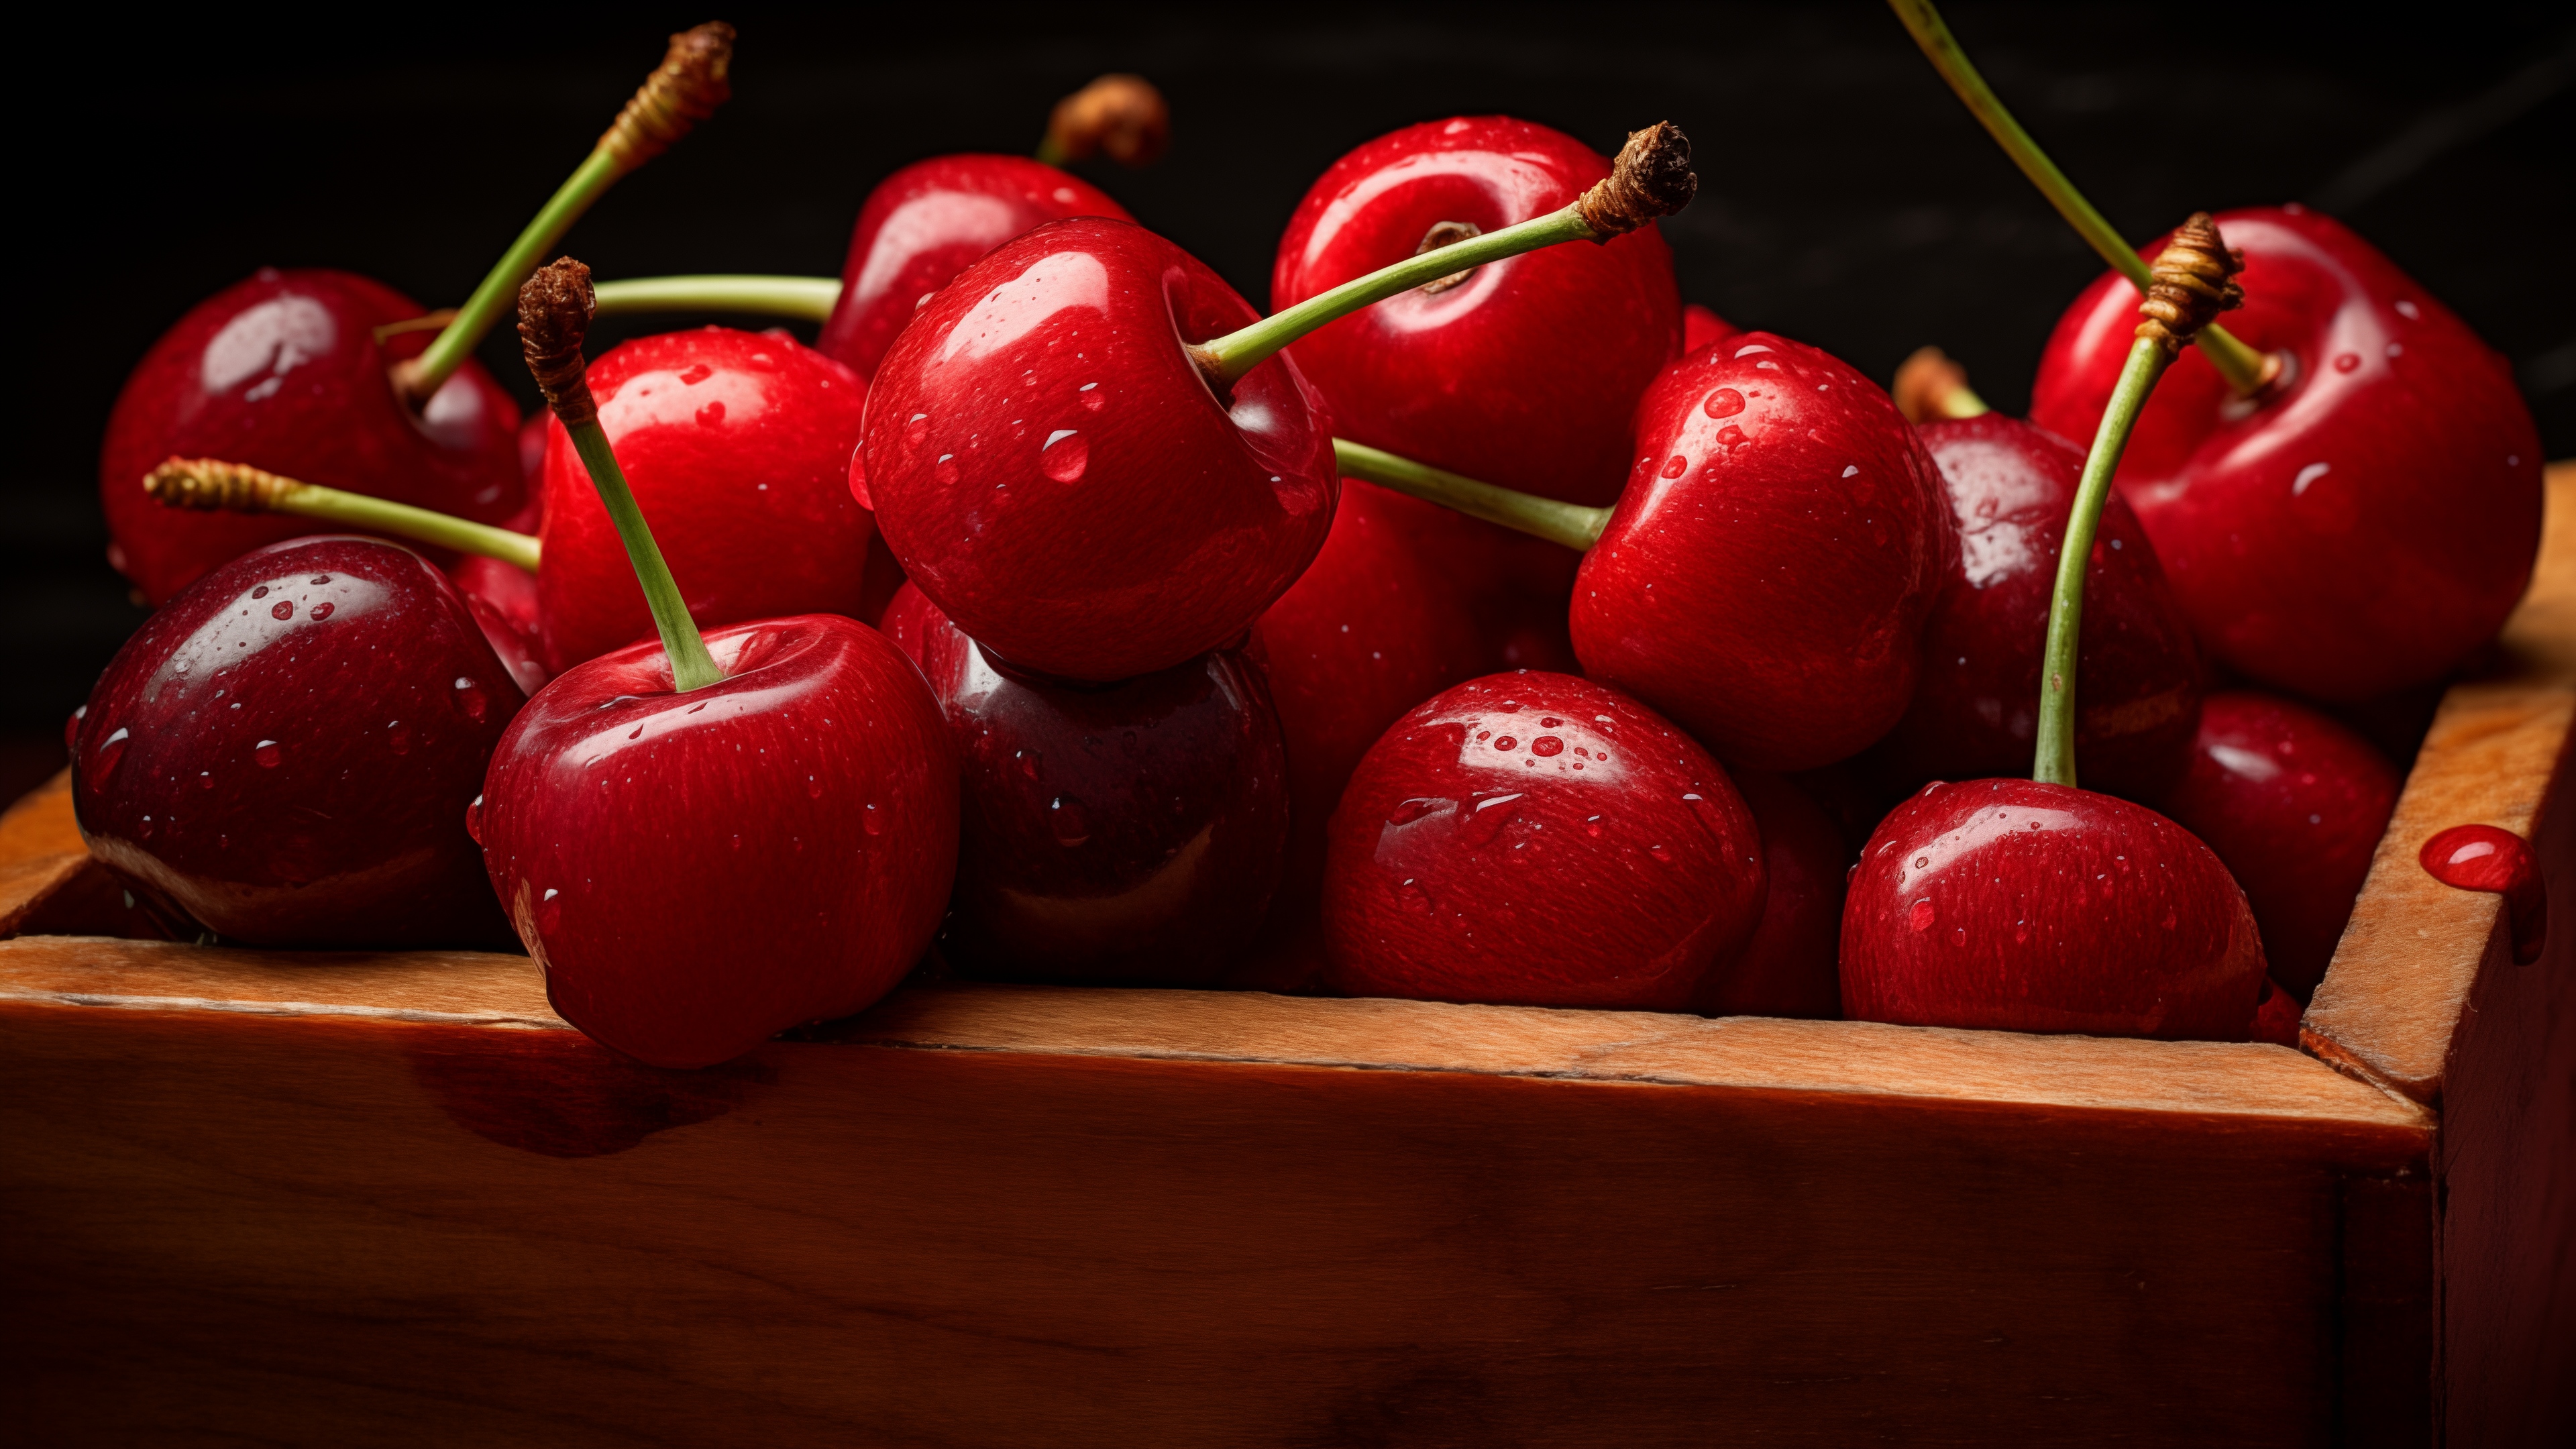 Big red cherries